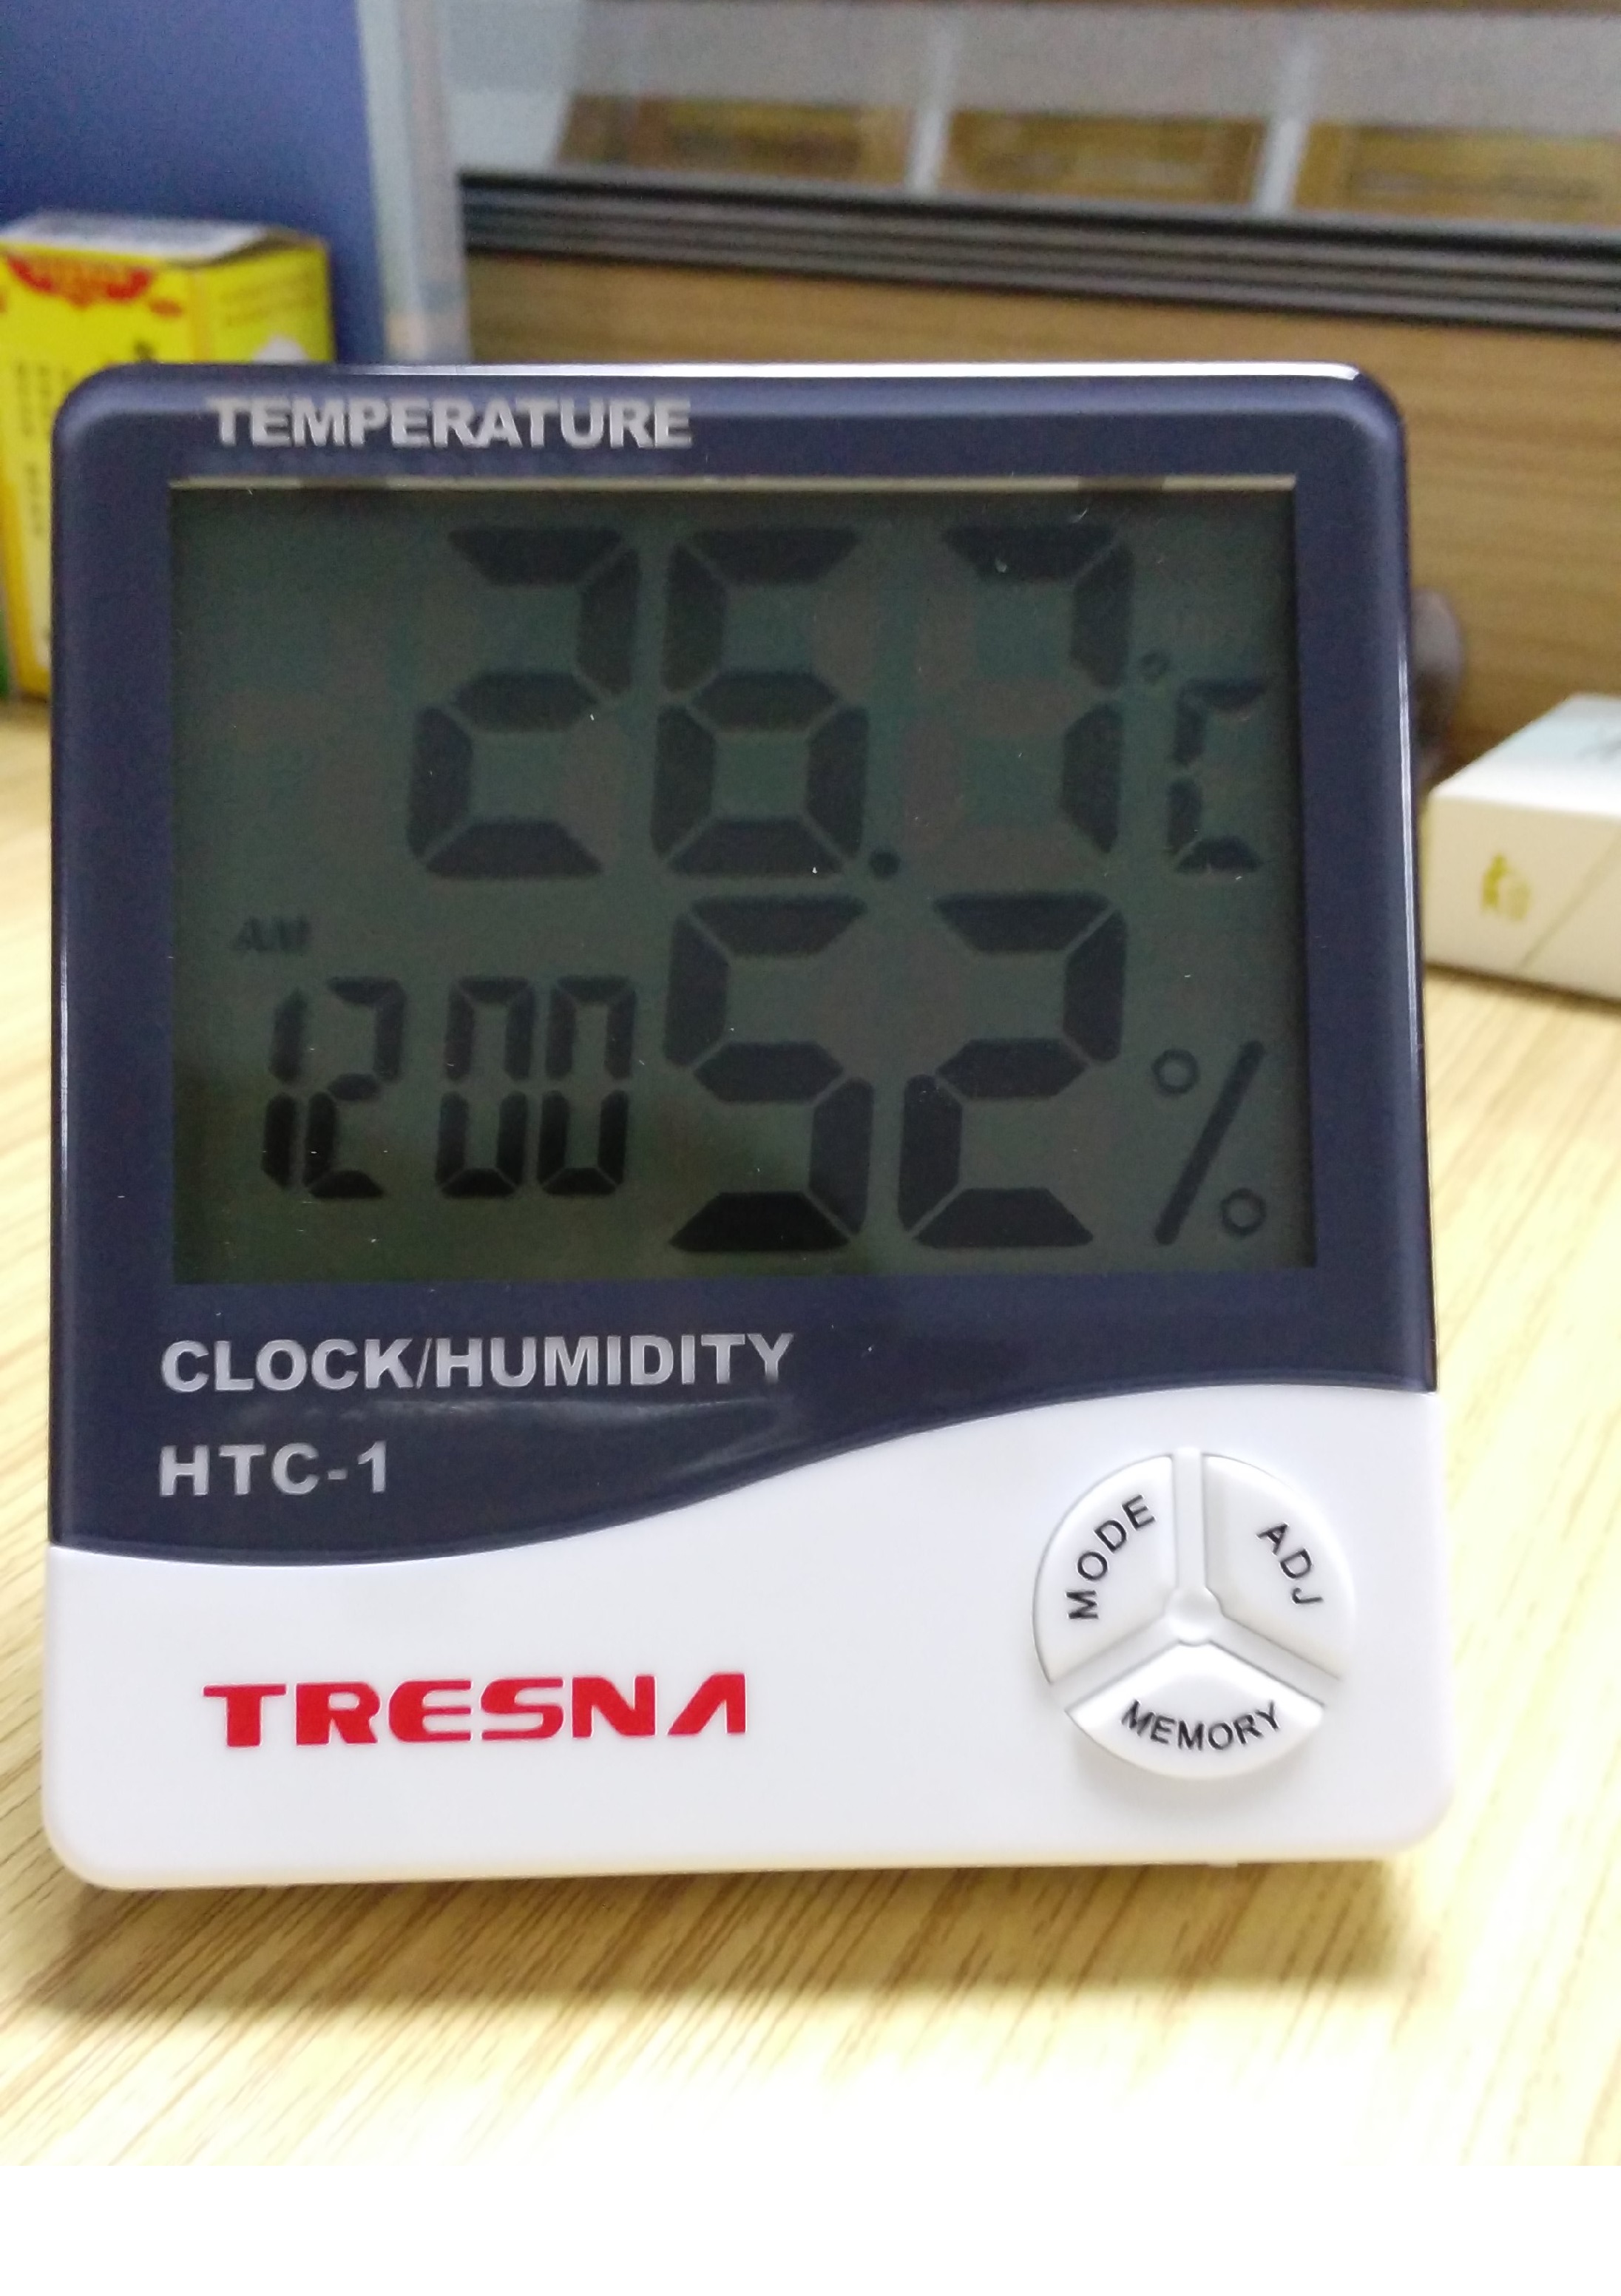 Htc-1 Termometre Tresna Dijital Ortam Nem ve Sıcaklık Ölçer